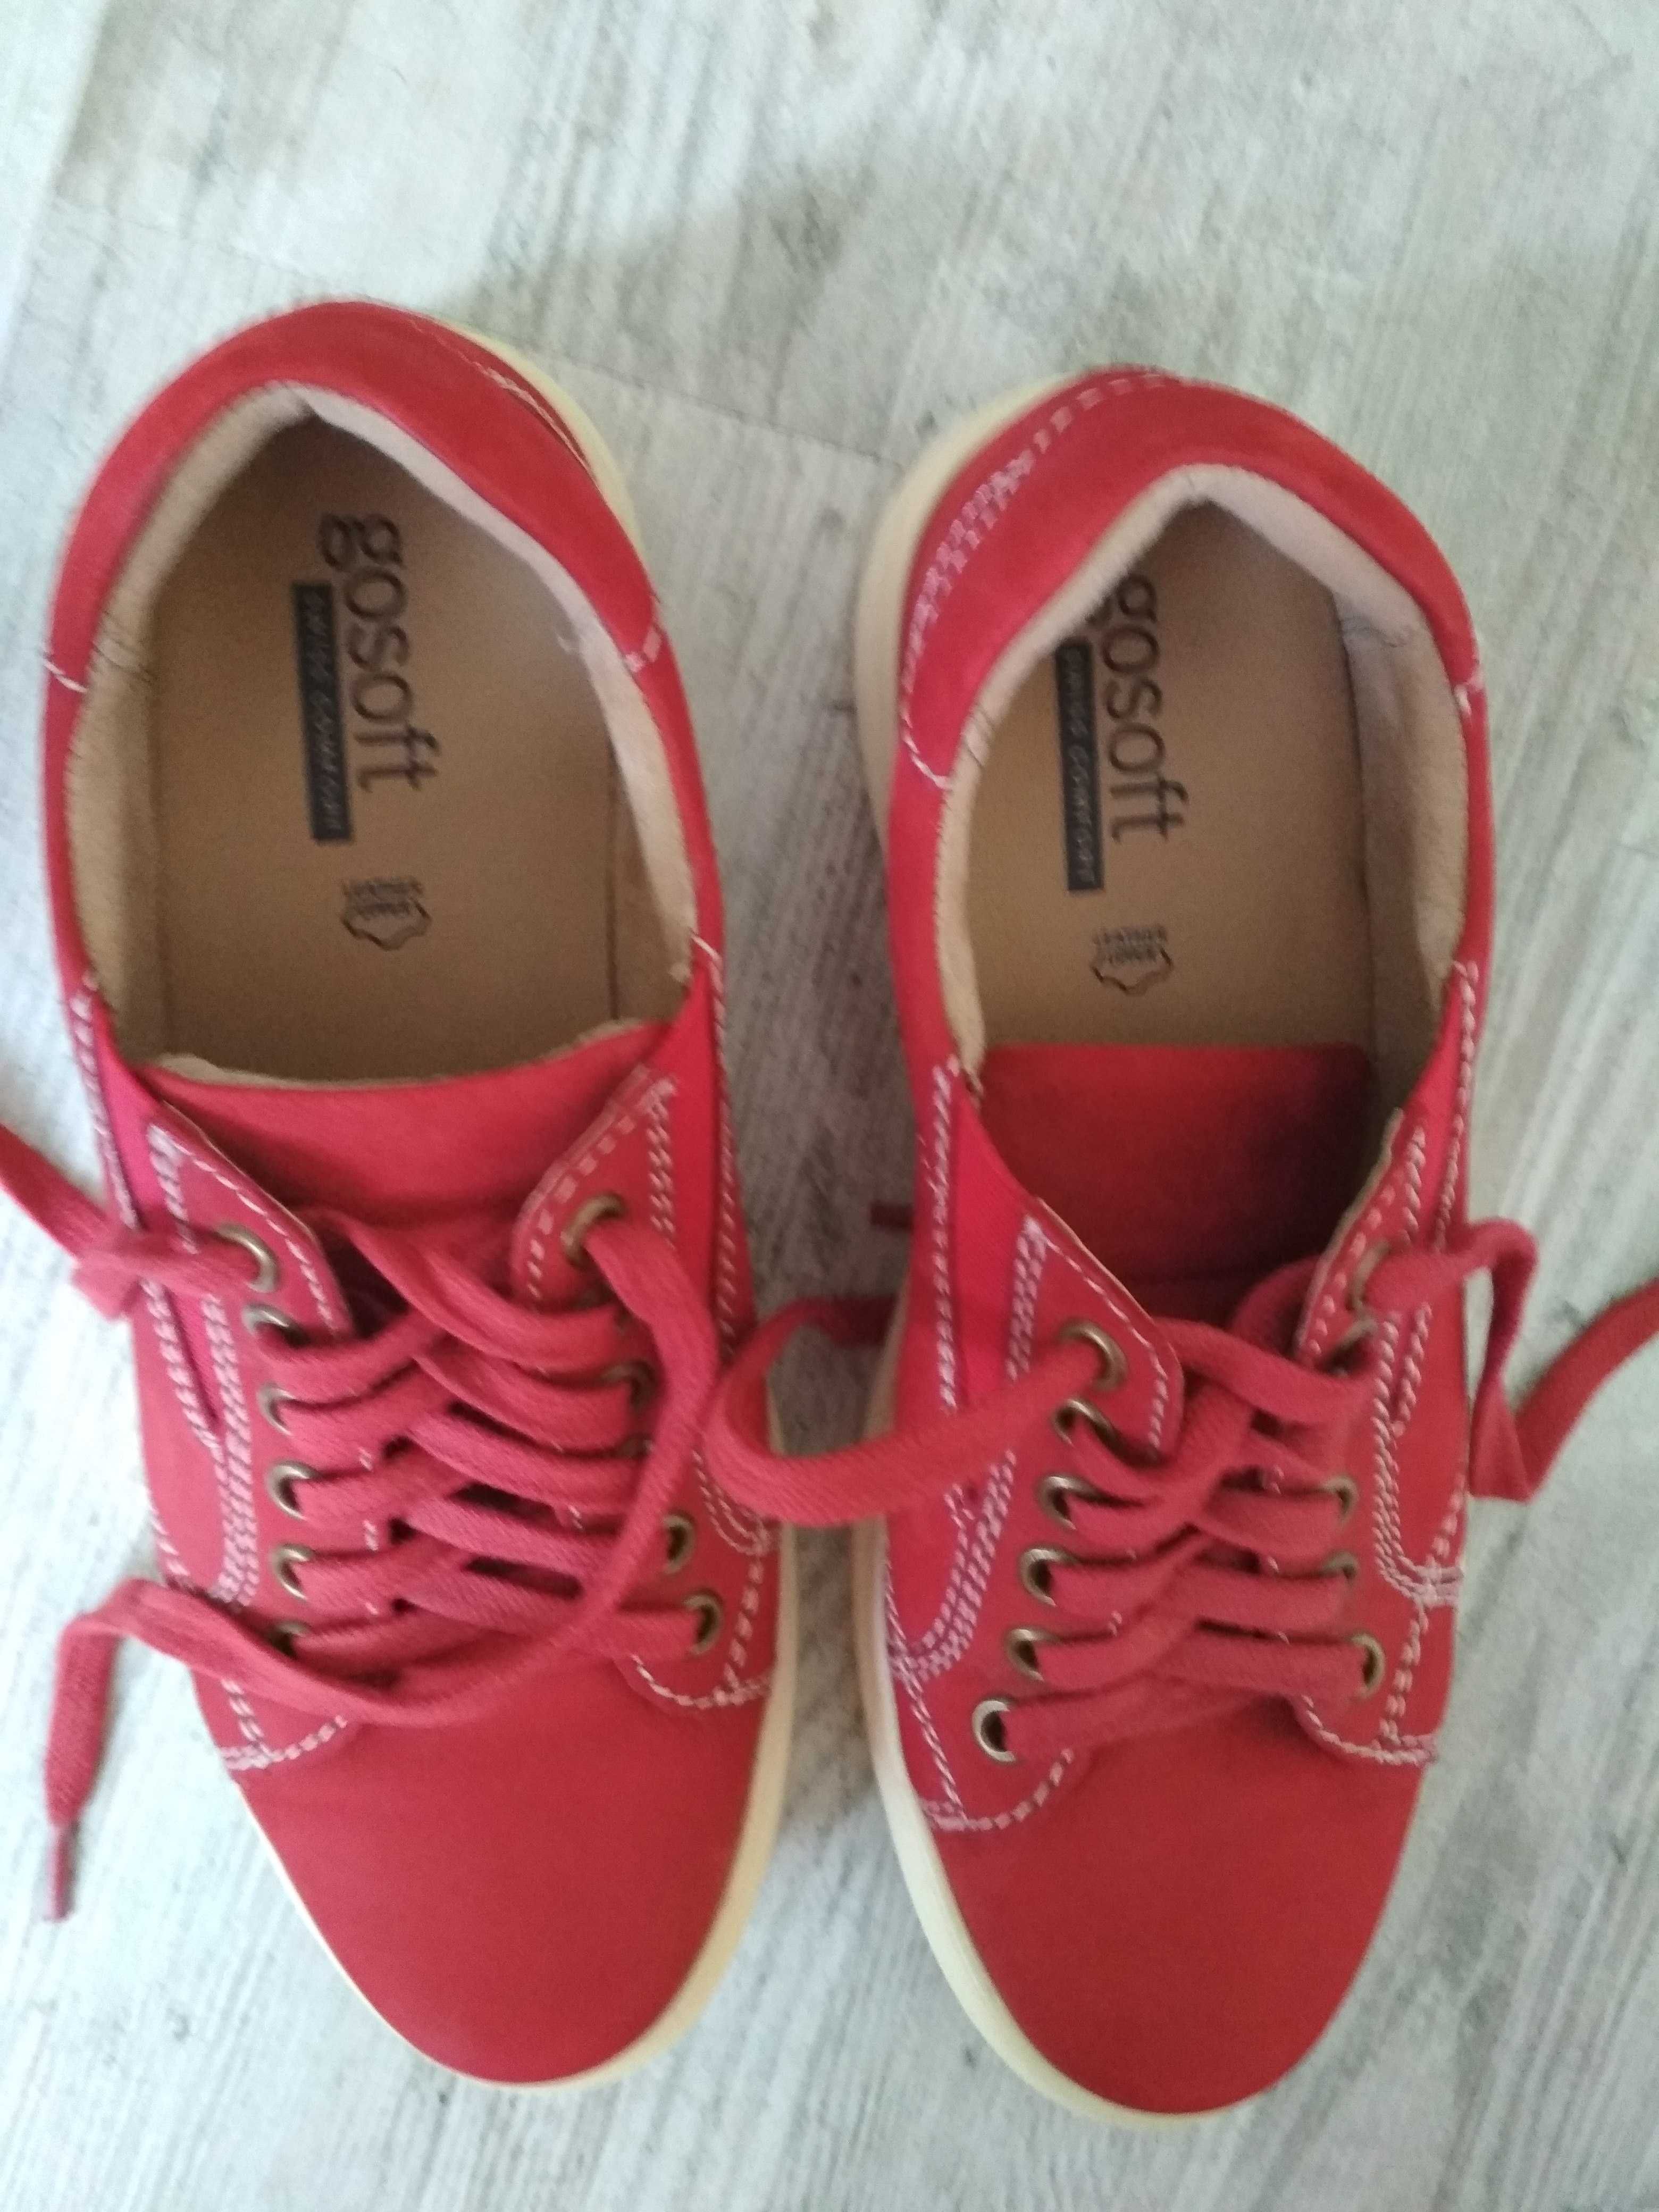 Jak nowe buty skórzane r. 38 czerwone gosoft 229zl wiosenne